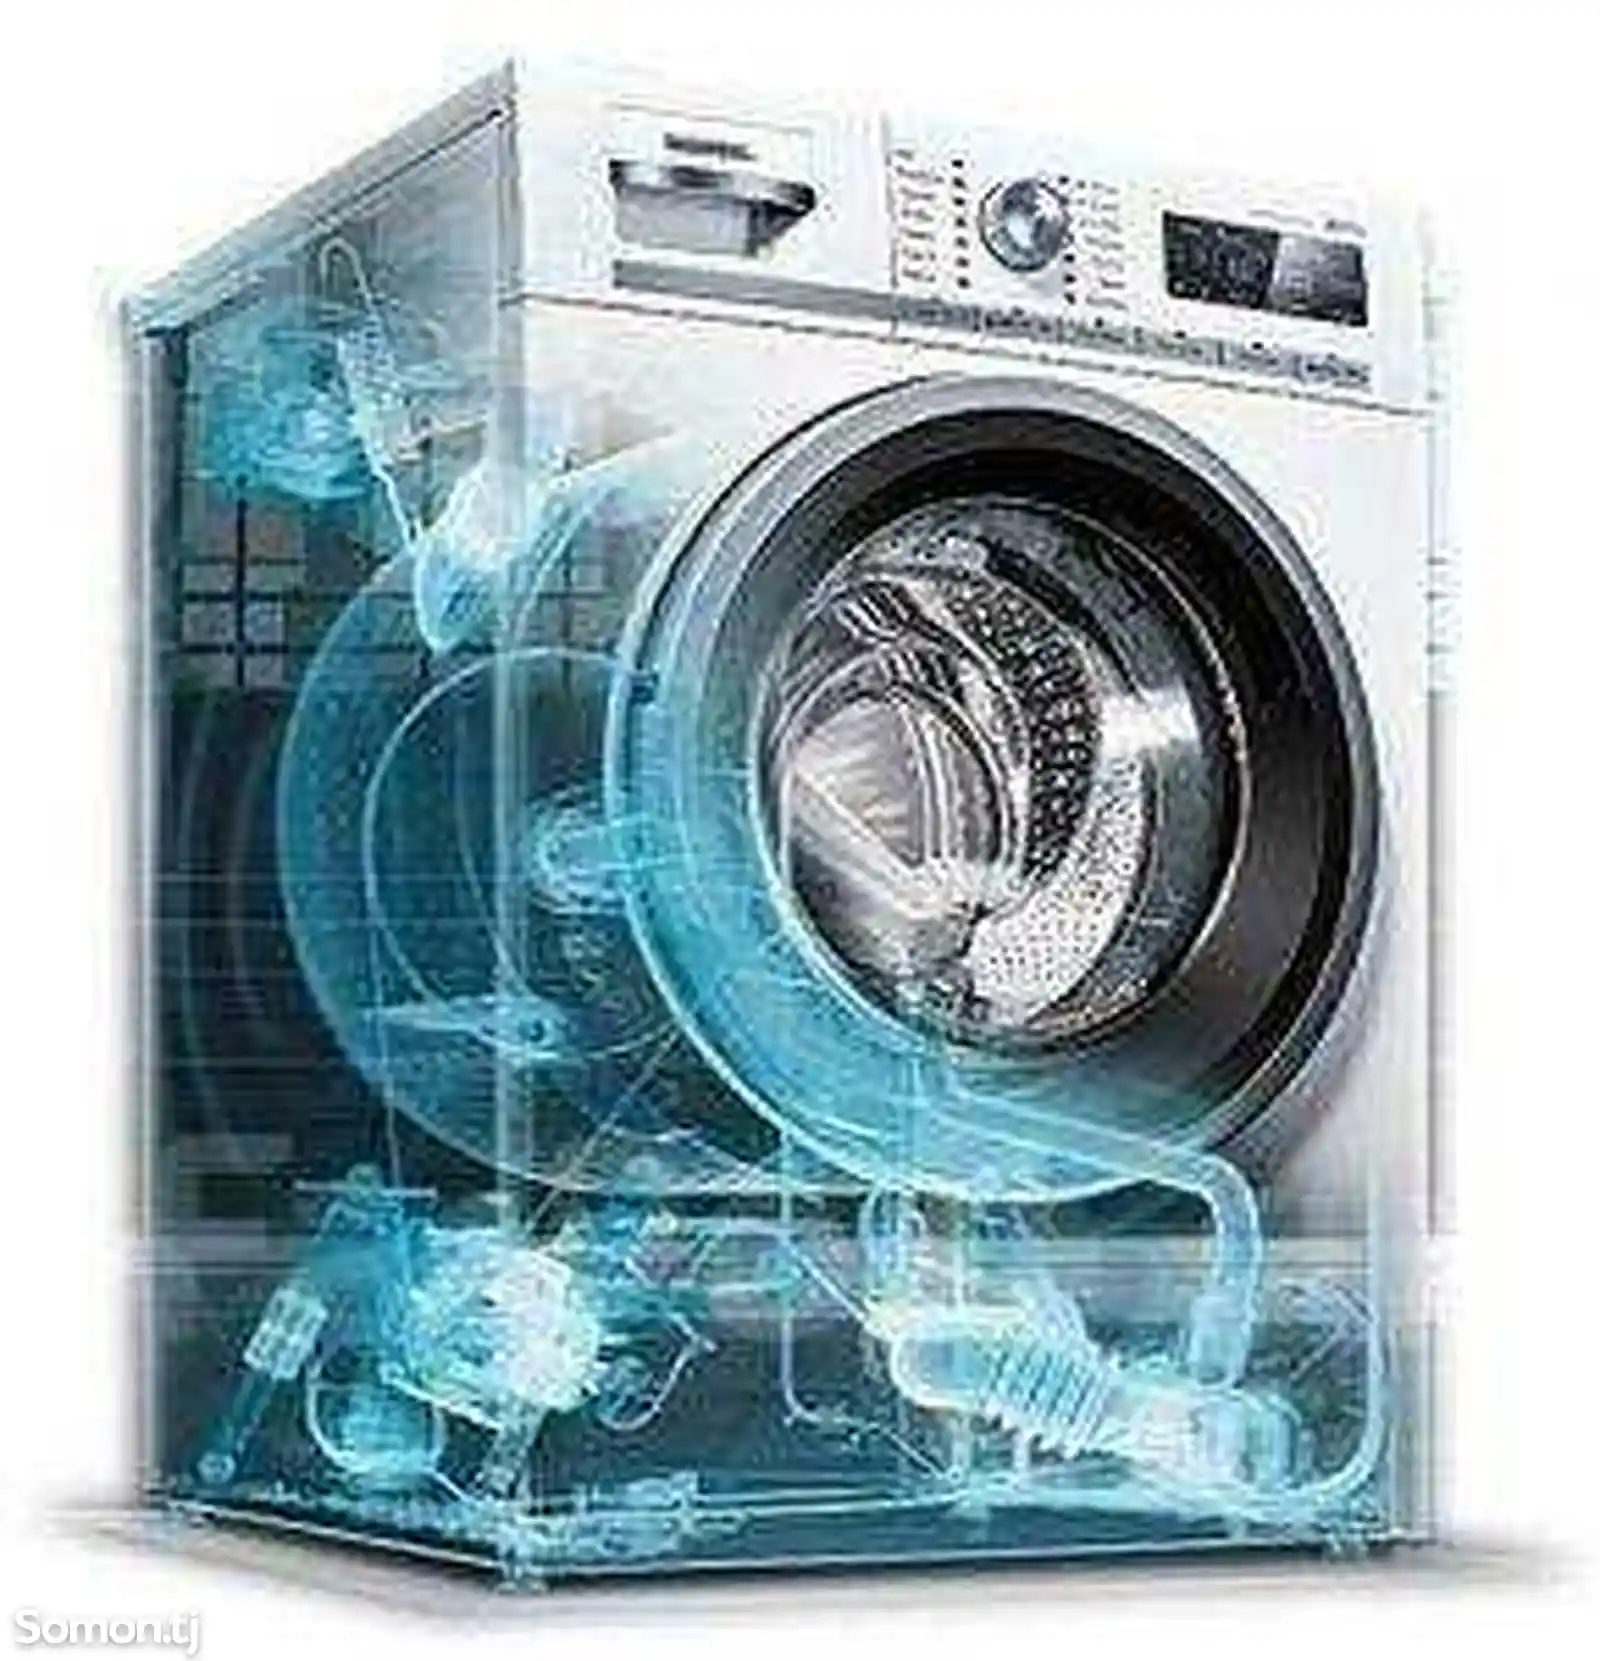 Ремонт стиральных машин на дому-2